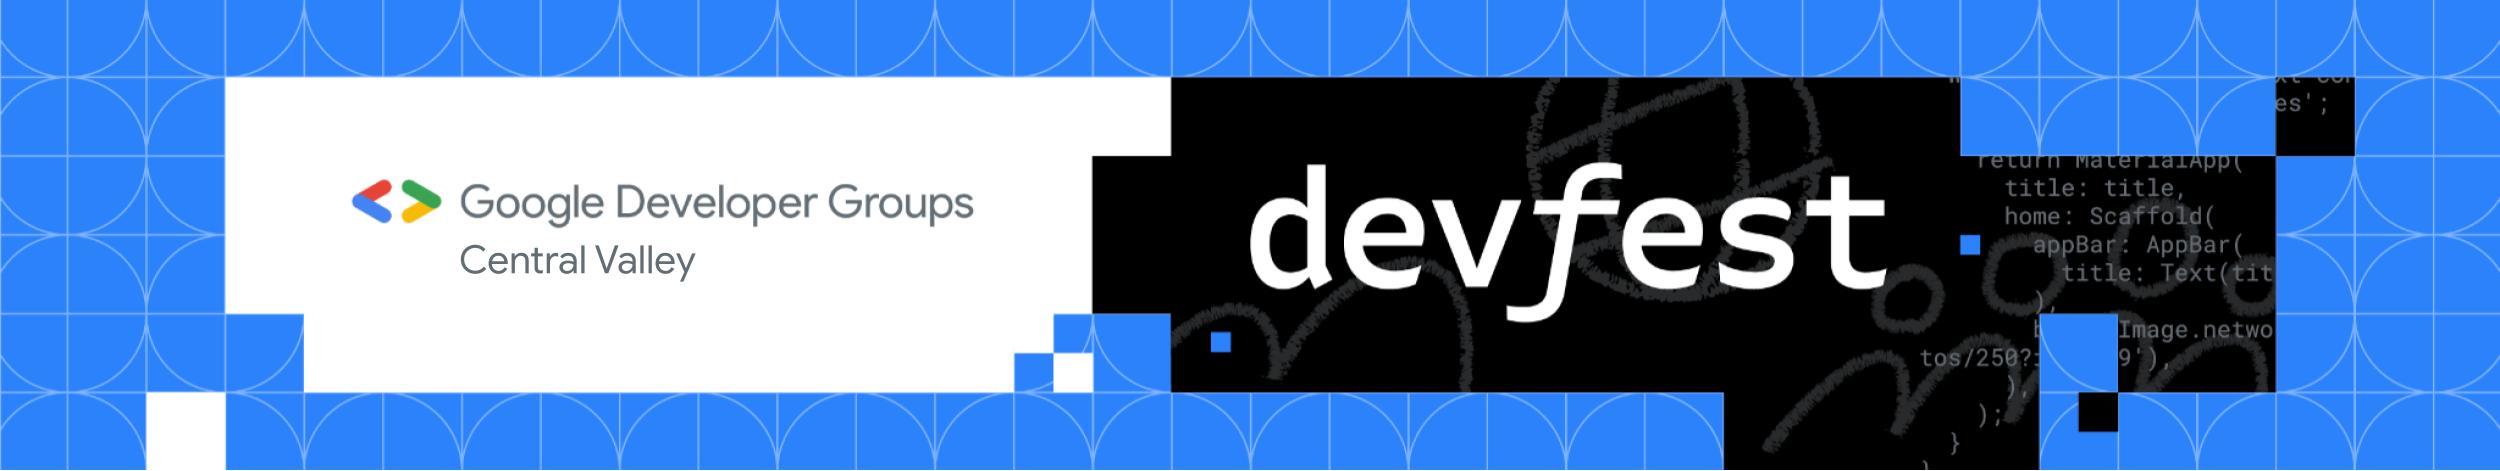 DevFest Banner